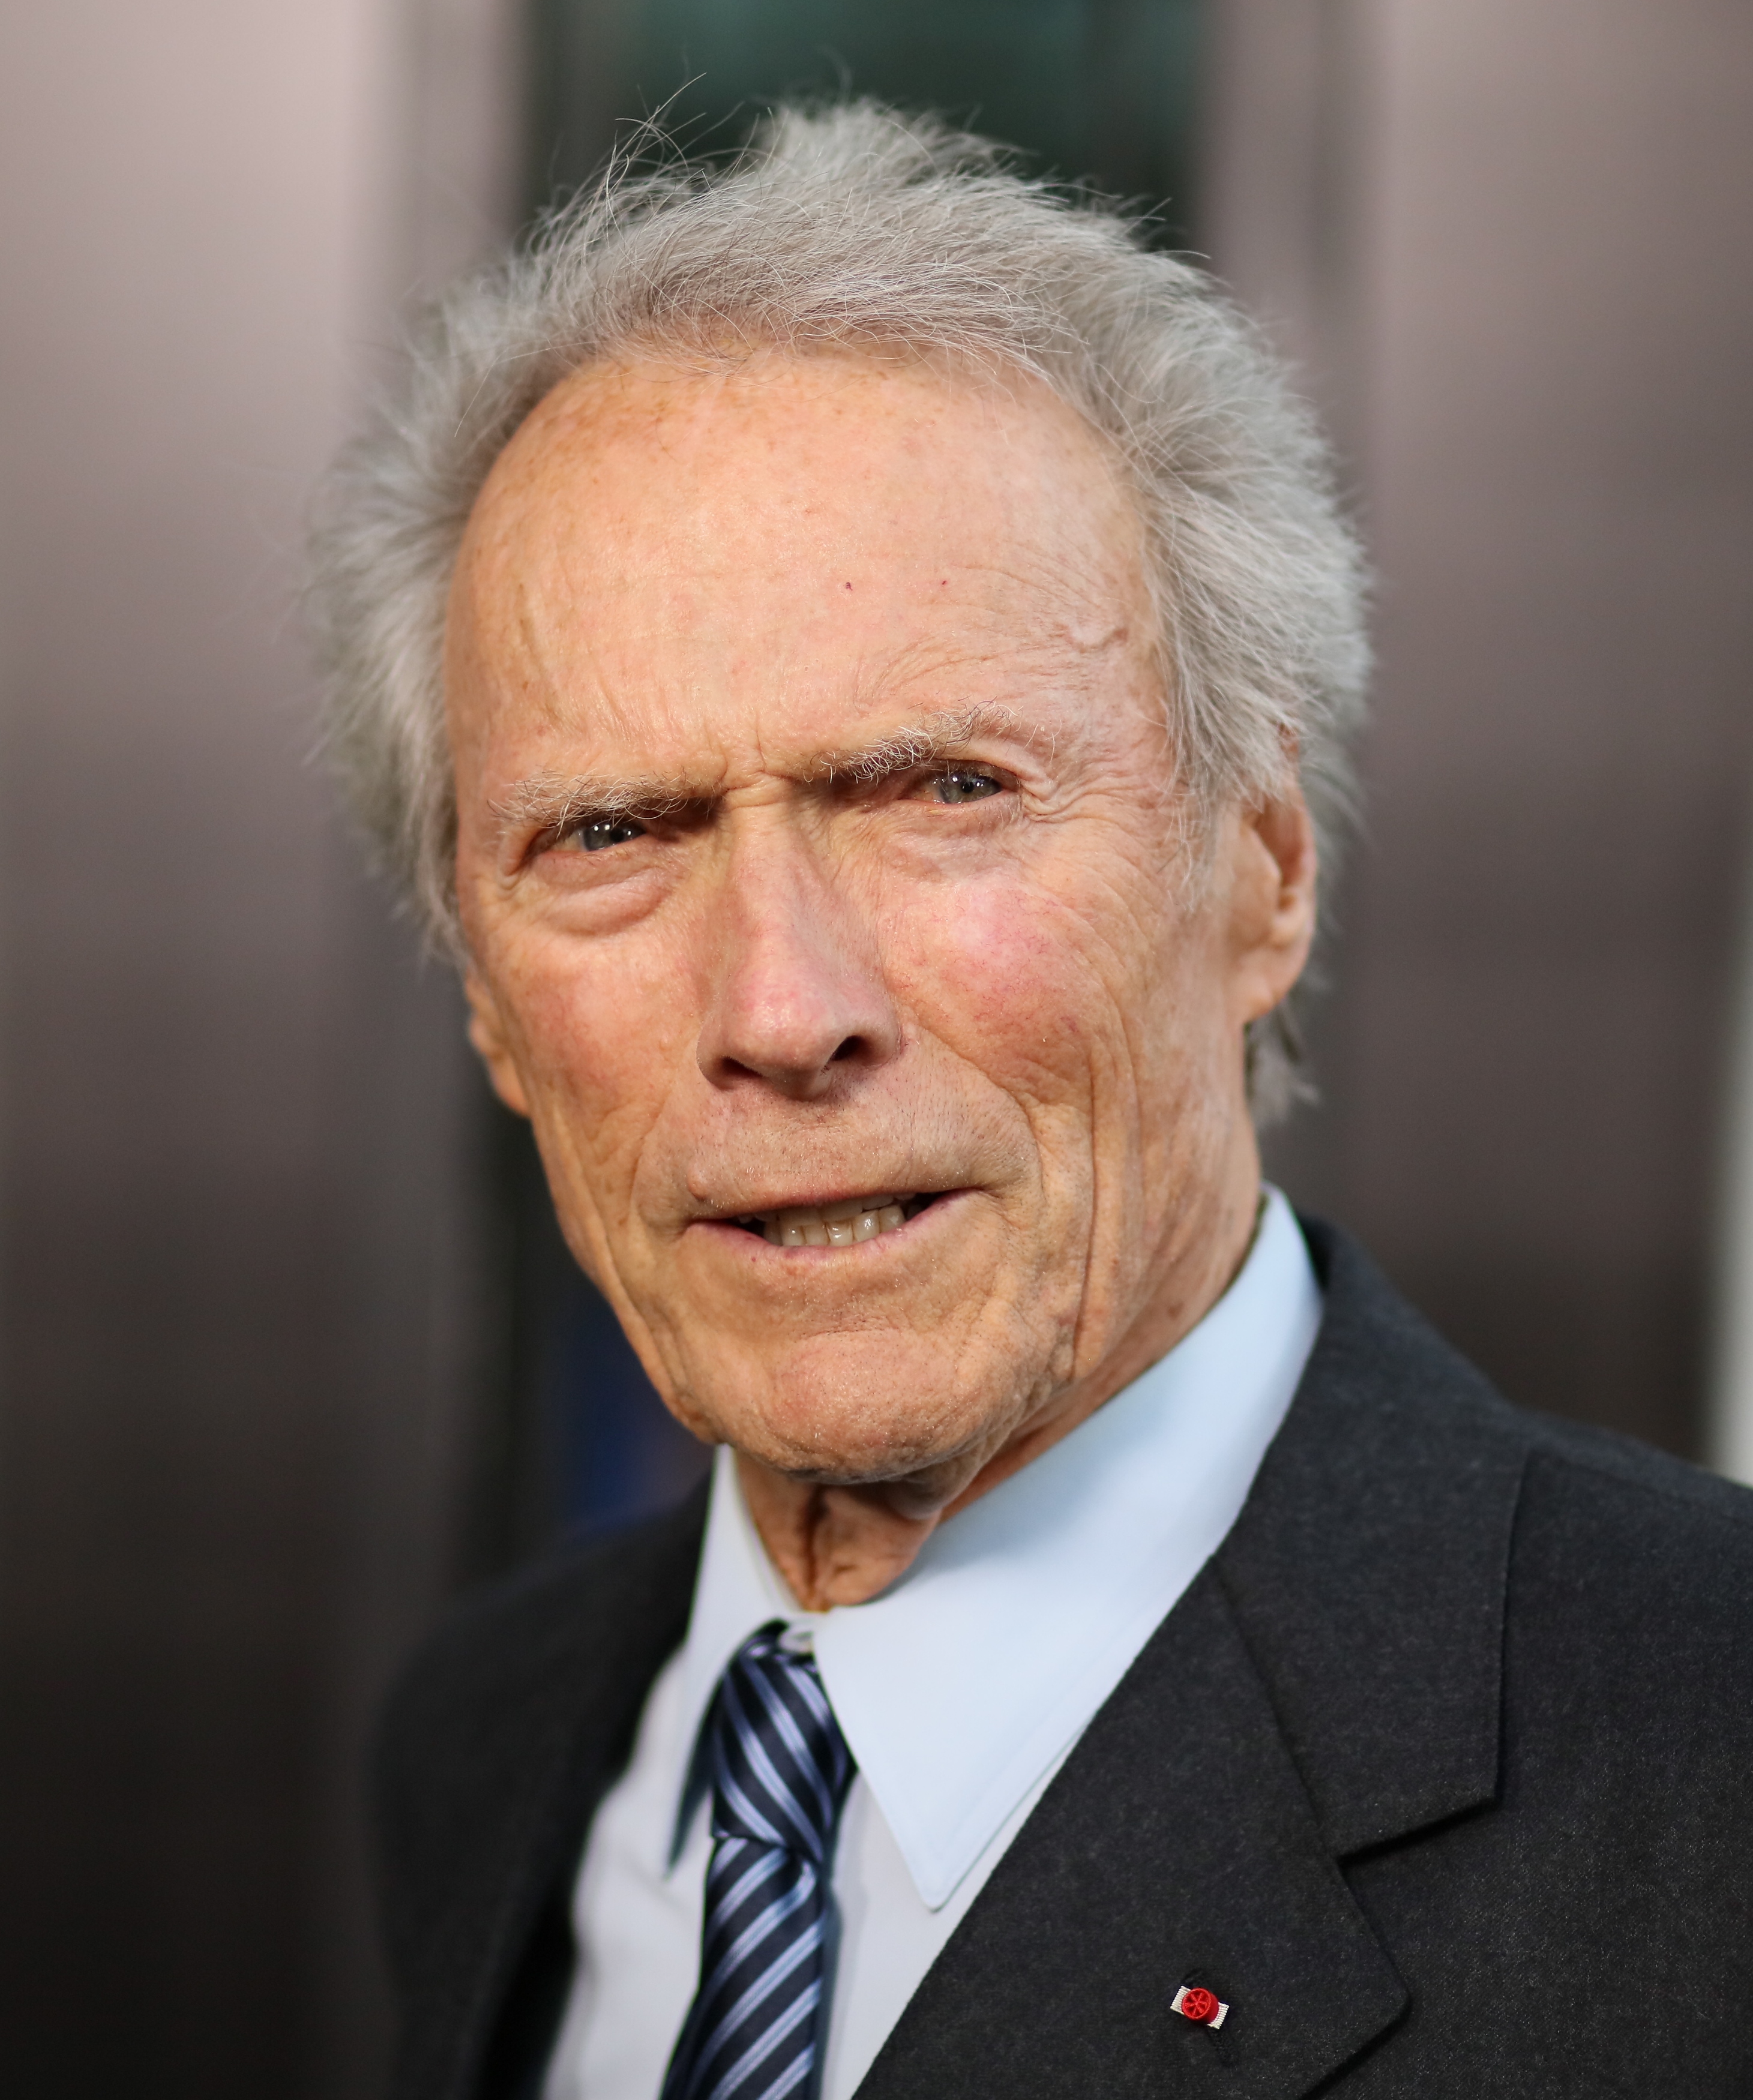 Clint Eastwood en la proyección de "Sully" en Los Ángeles en 2016 | Foto: Getty Images